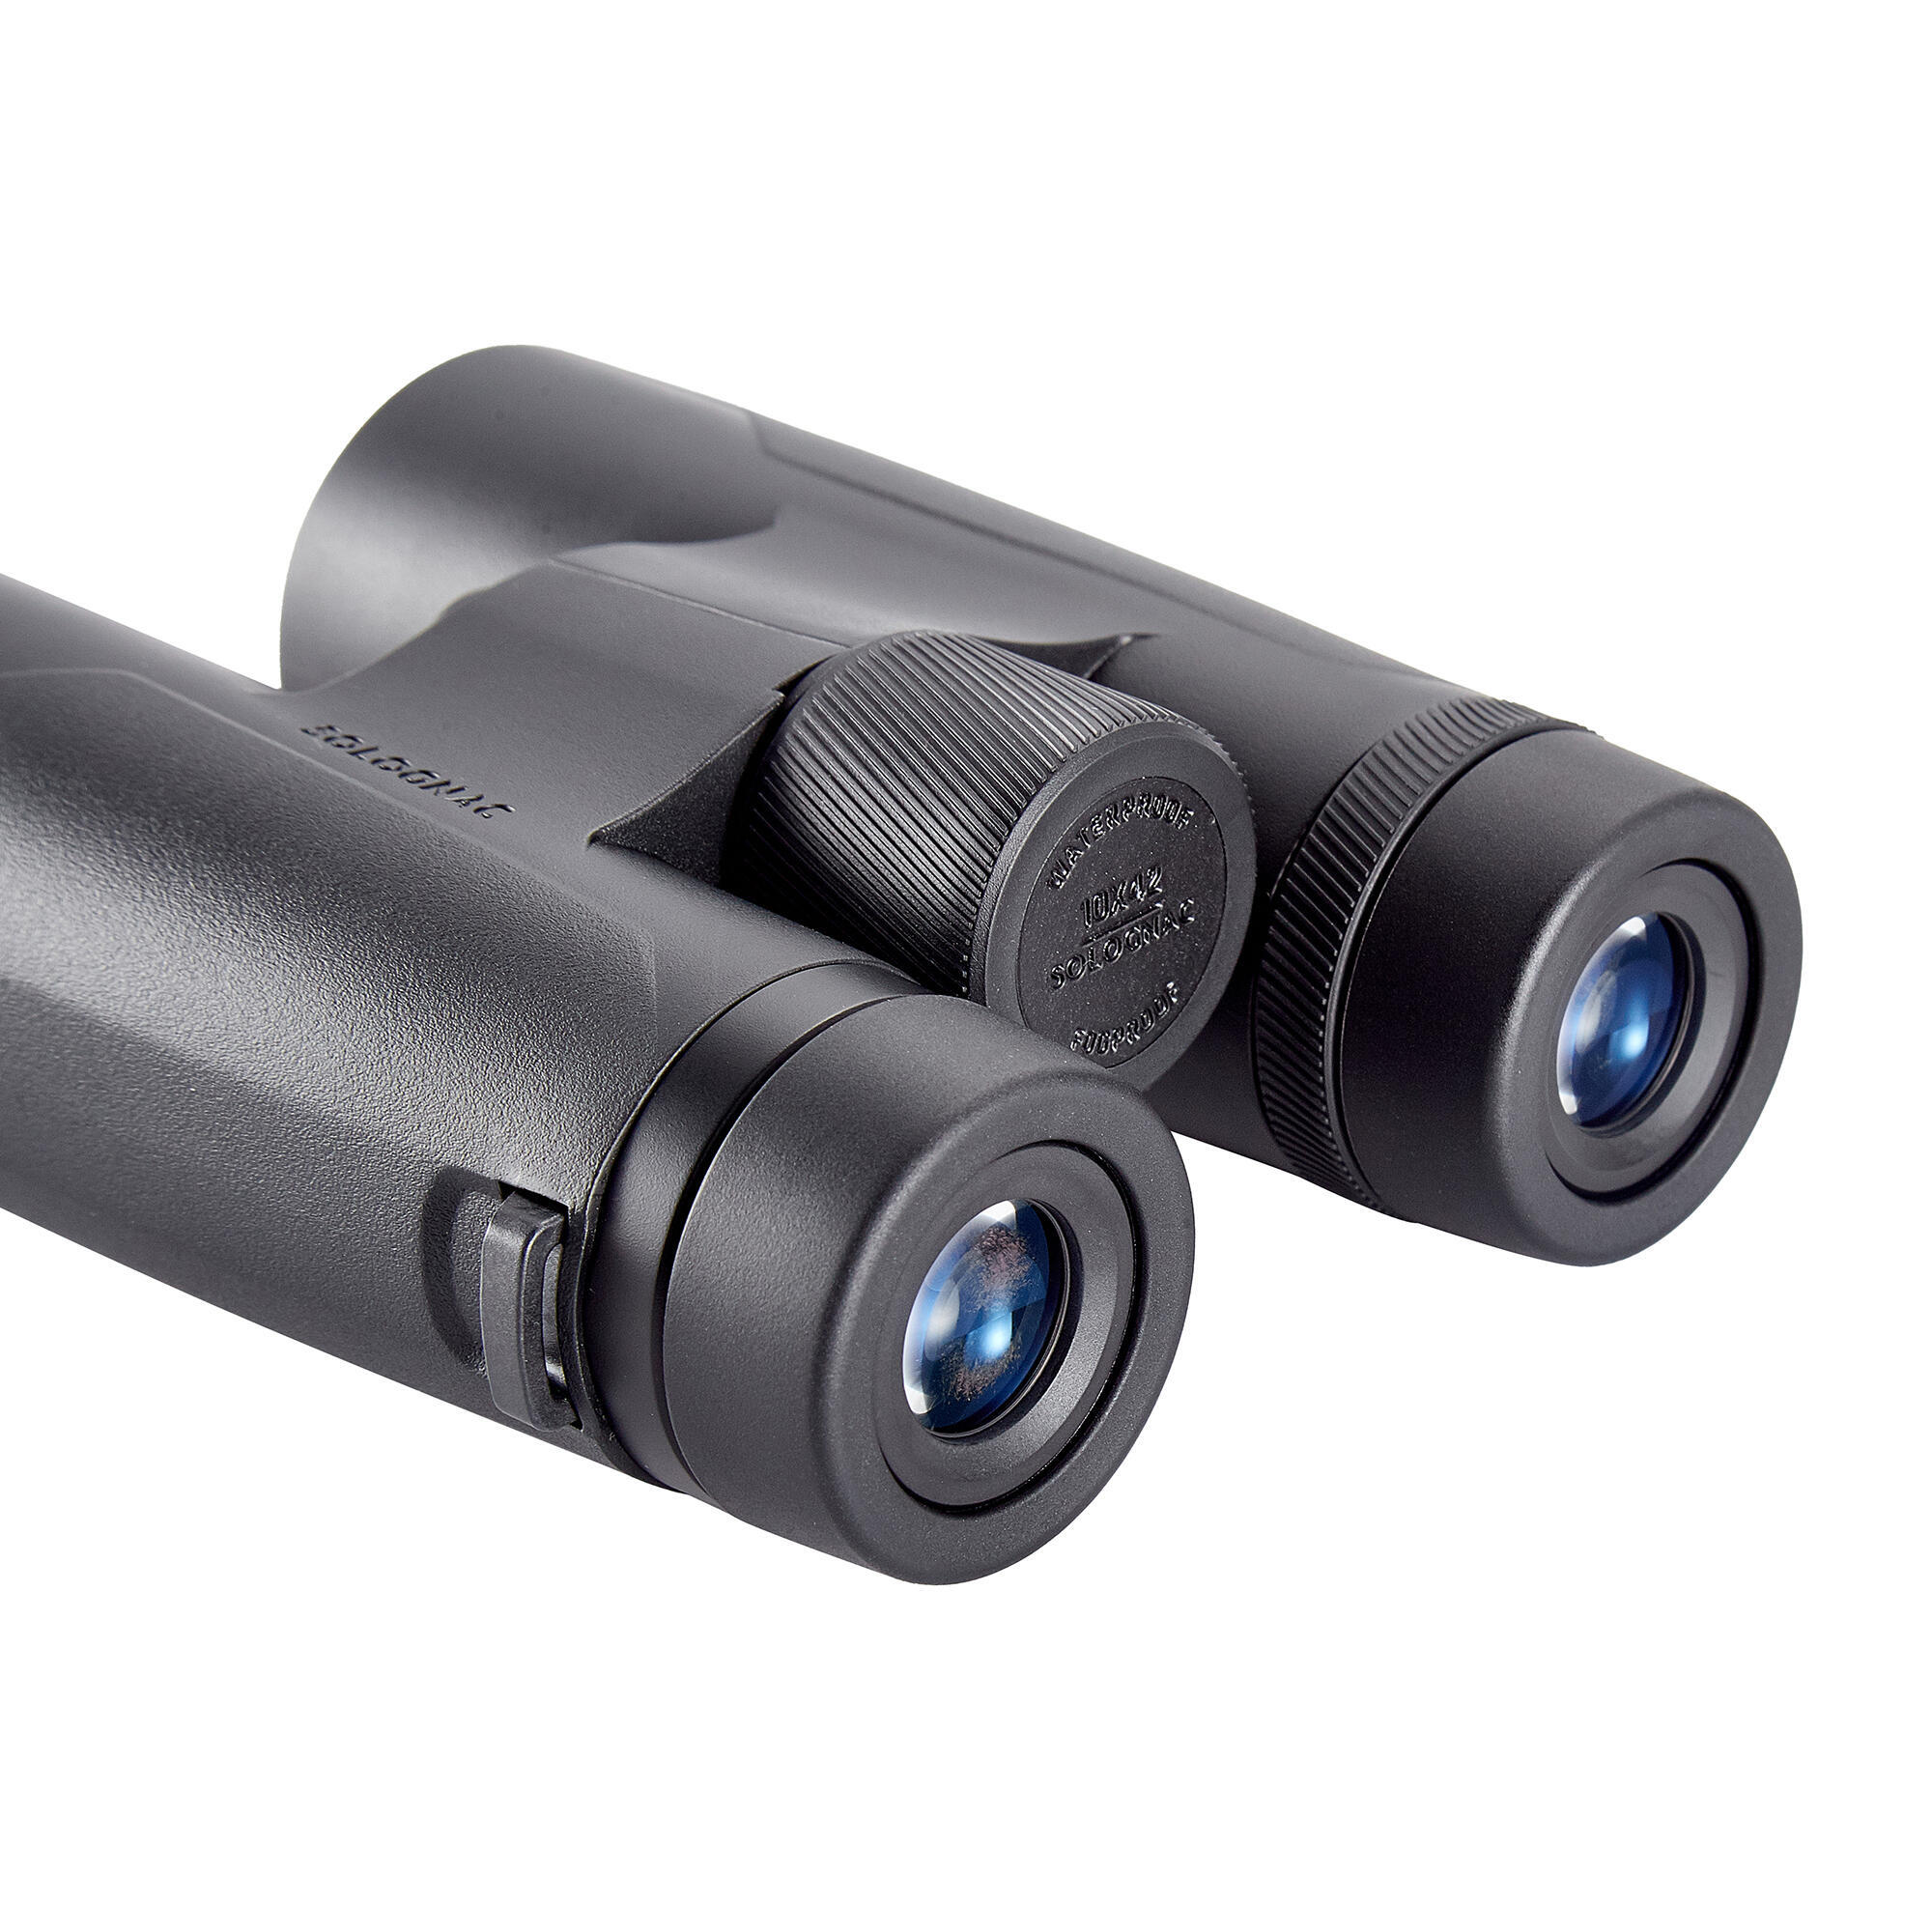 Waterproof hunting binoculars 100 10x42 - black 2/14